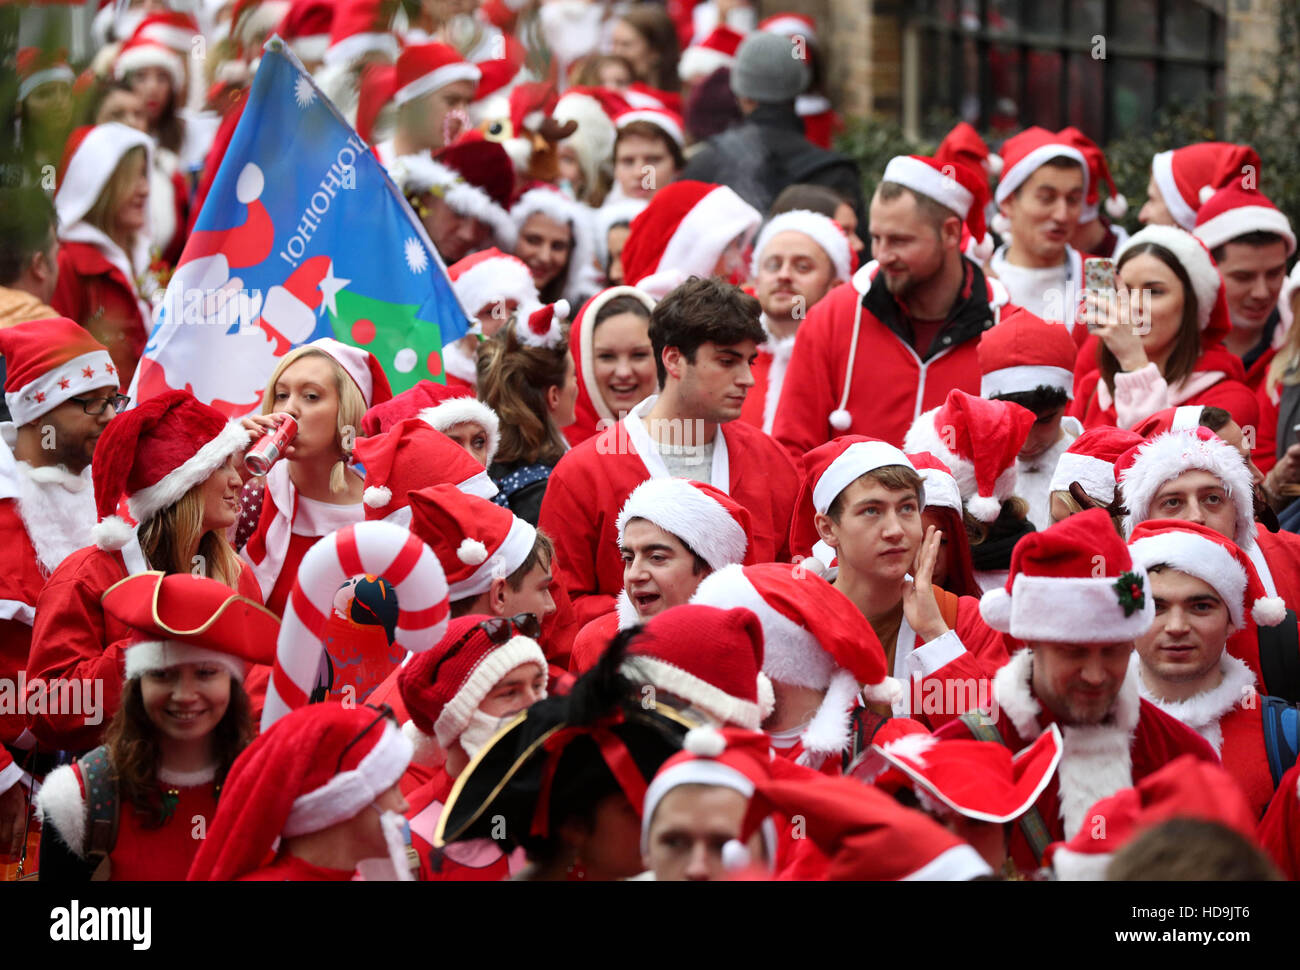 Des centaines de fêtards habillés en Père Nöel est parti de Camden dans le nord de Londres pour participer à la parade de Noël Santacon. Banque D'Images